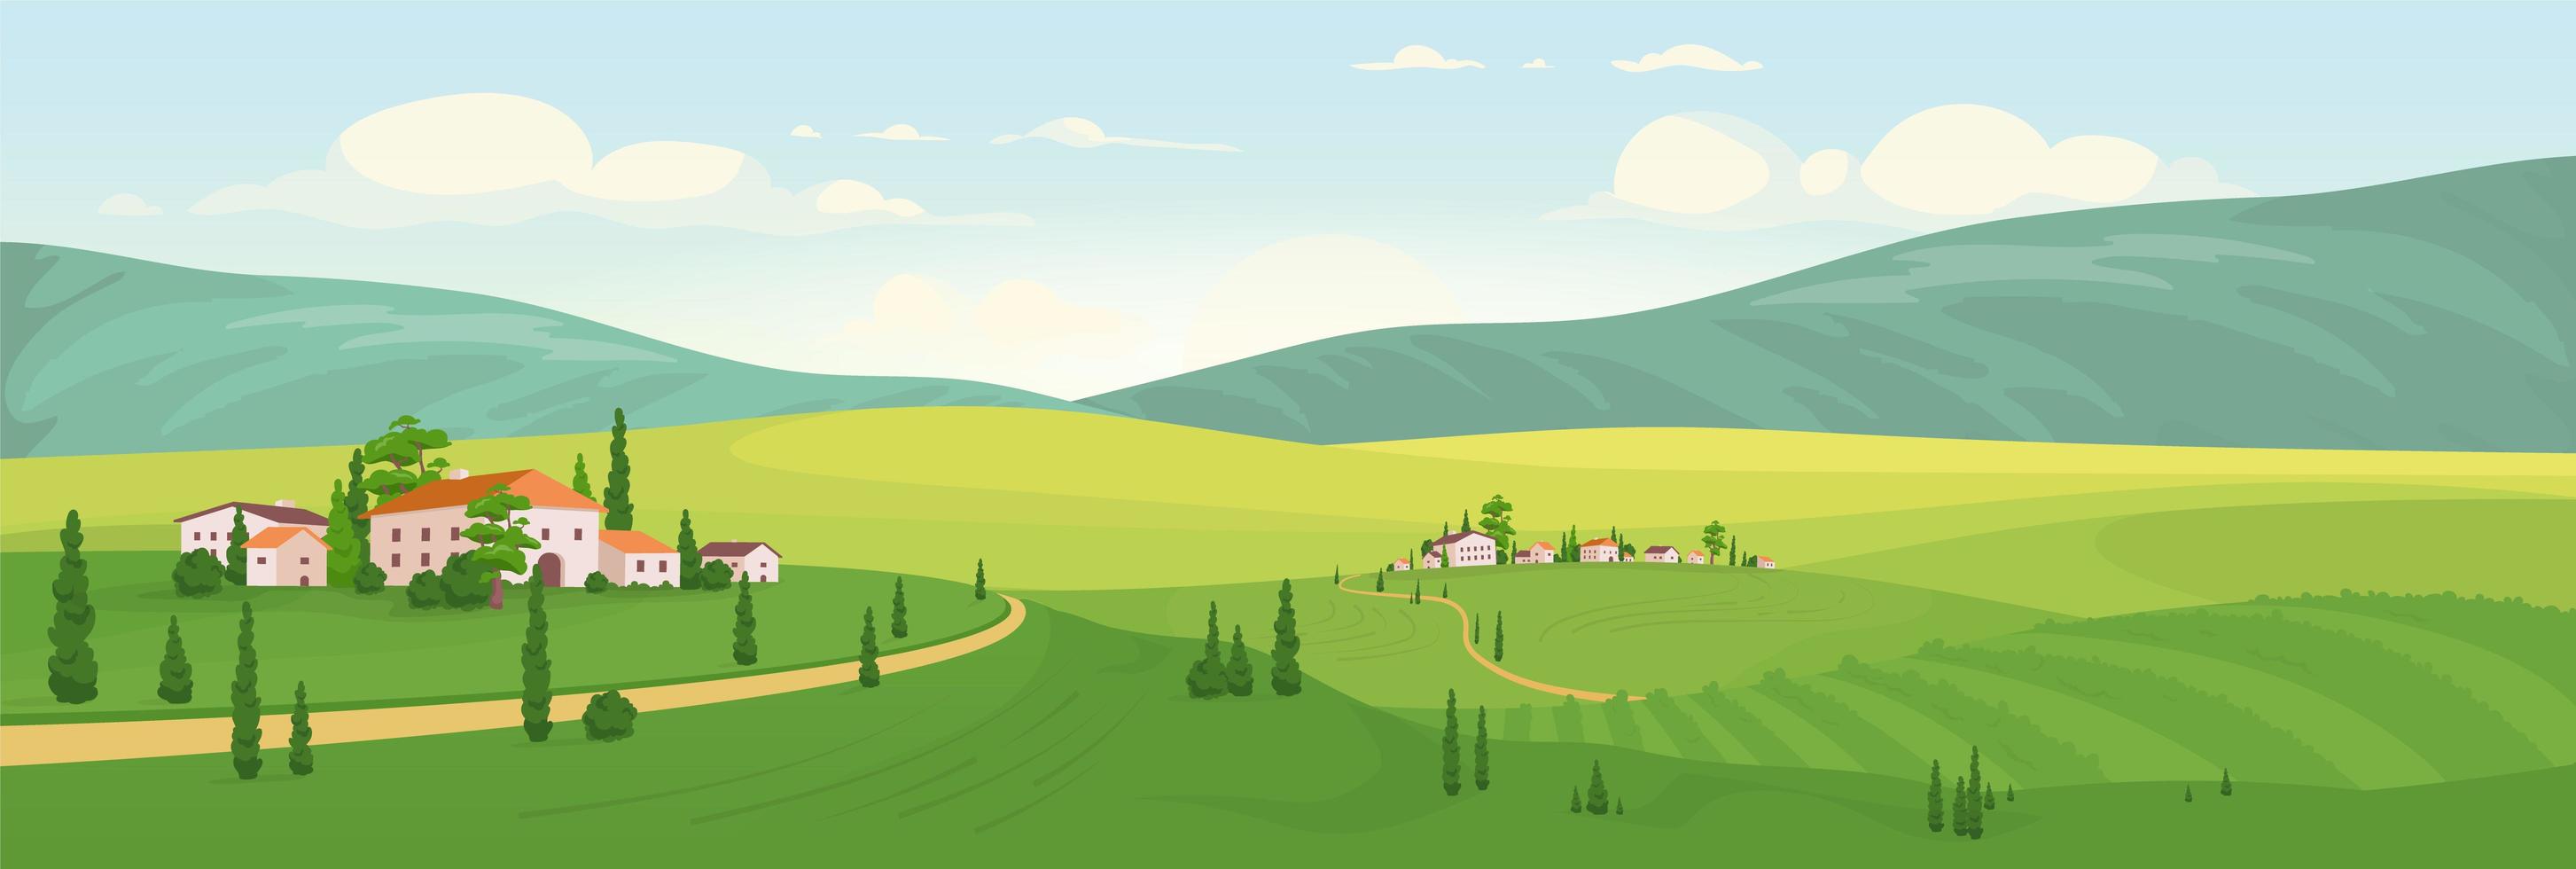 idílico paisaje rural vector